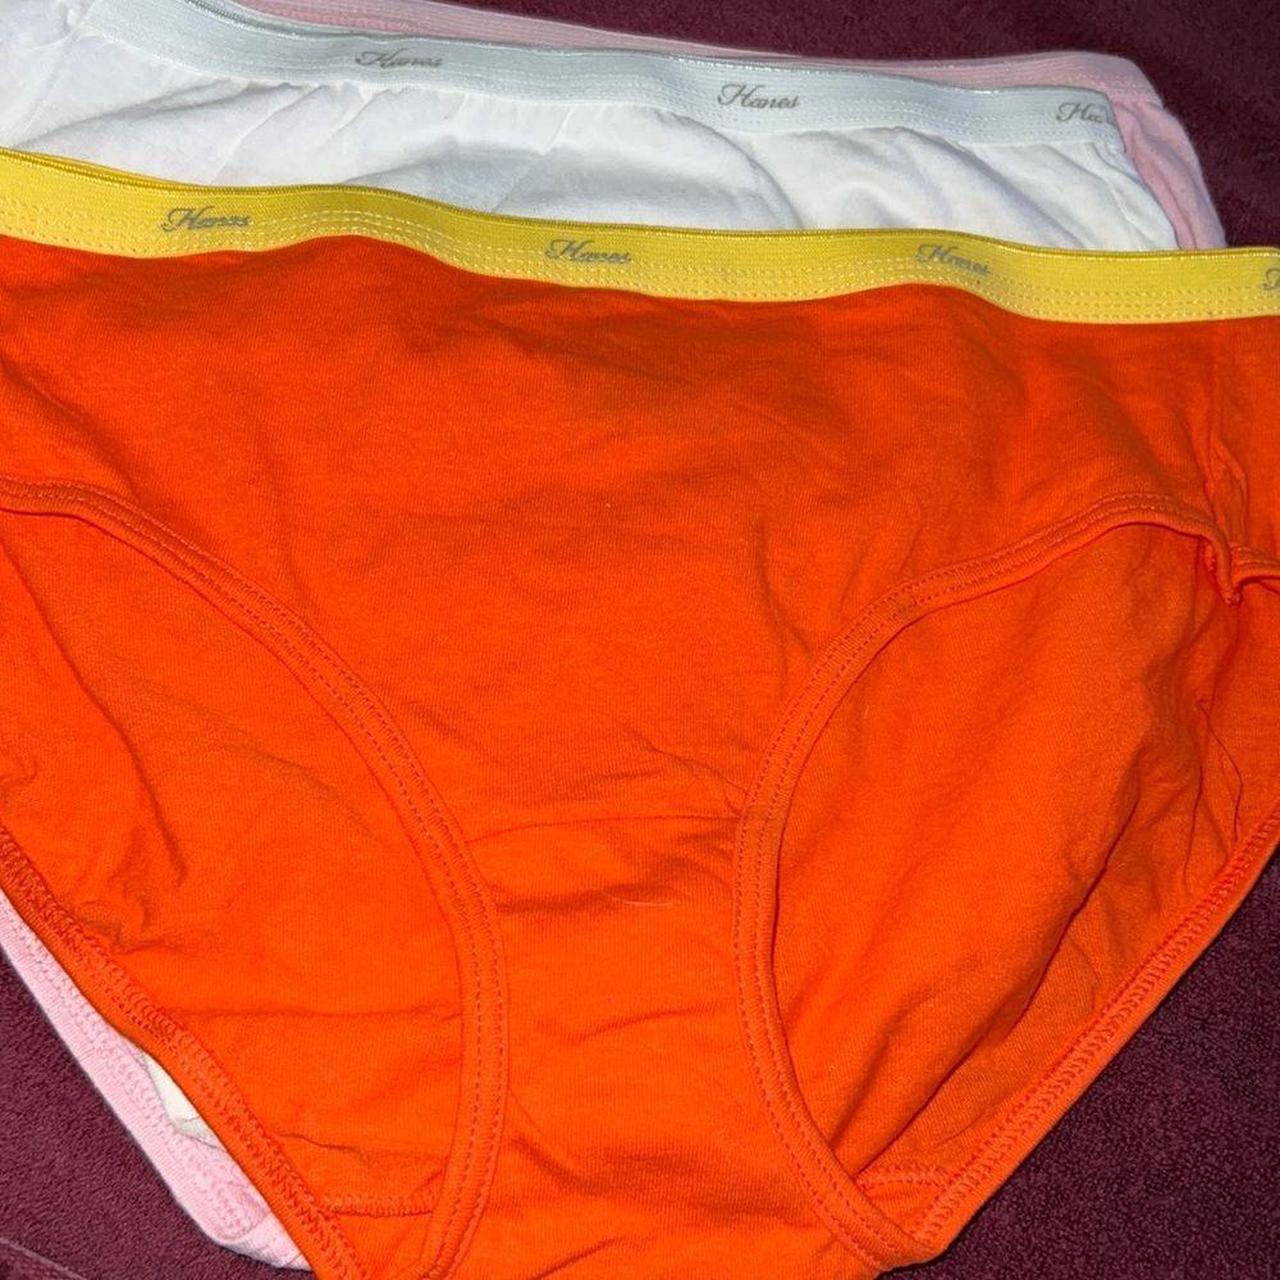 Womens hanes underwear size 6/M/M/M